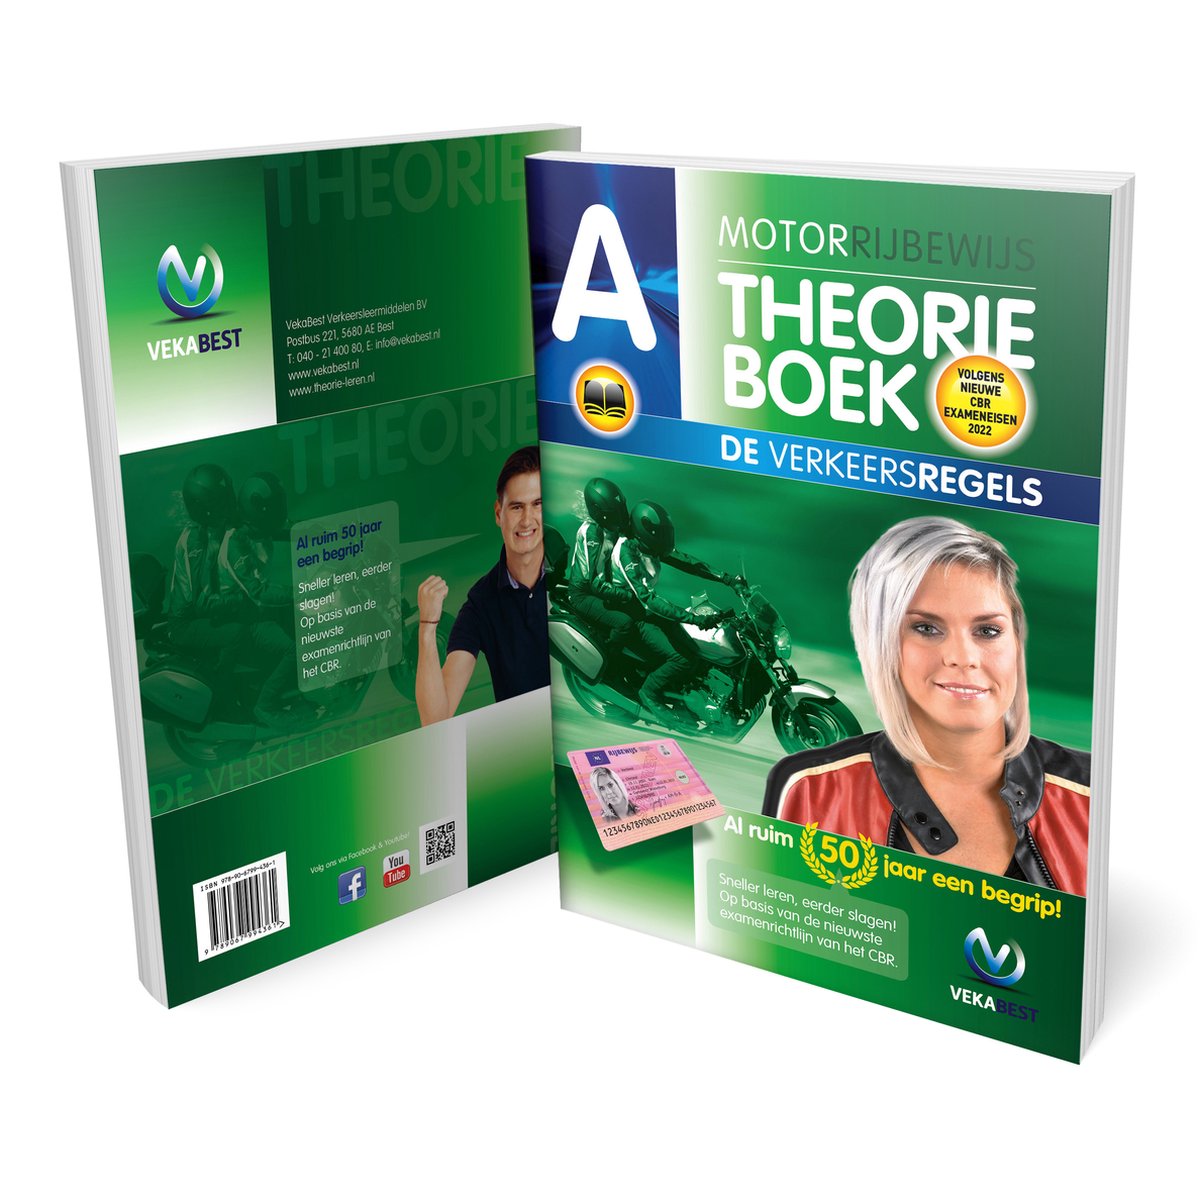 Motor Theorieboek 2022 - CBR Motor Theorie Leren - Rijbewijs A - VekaBest - VekaBest